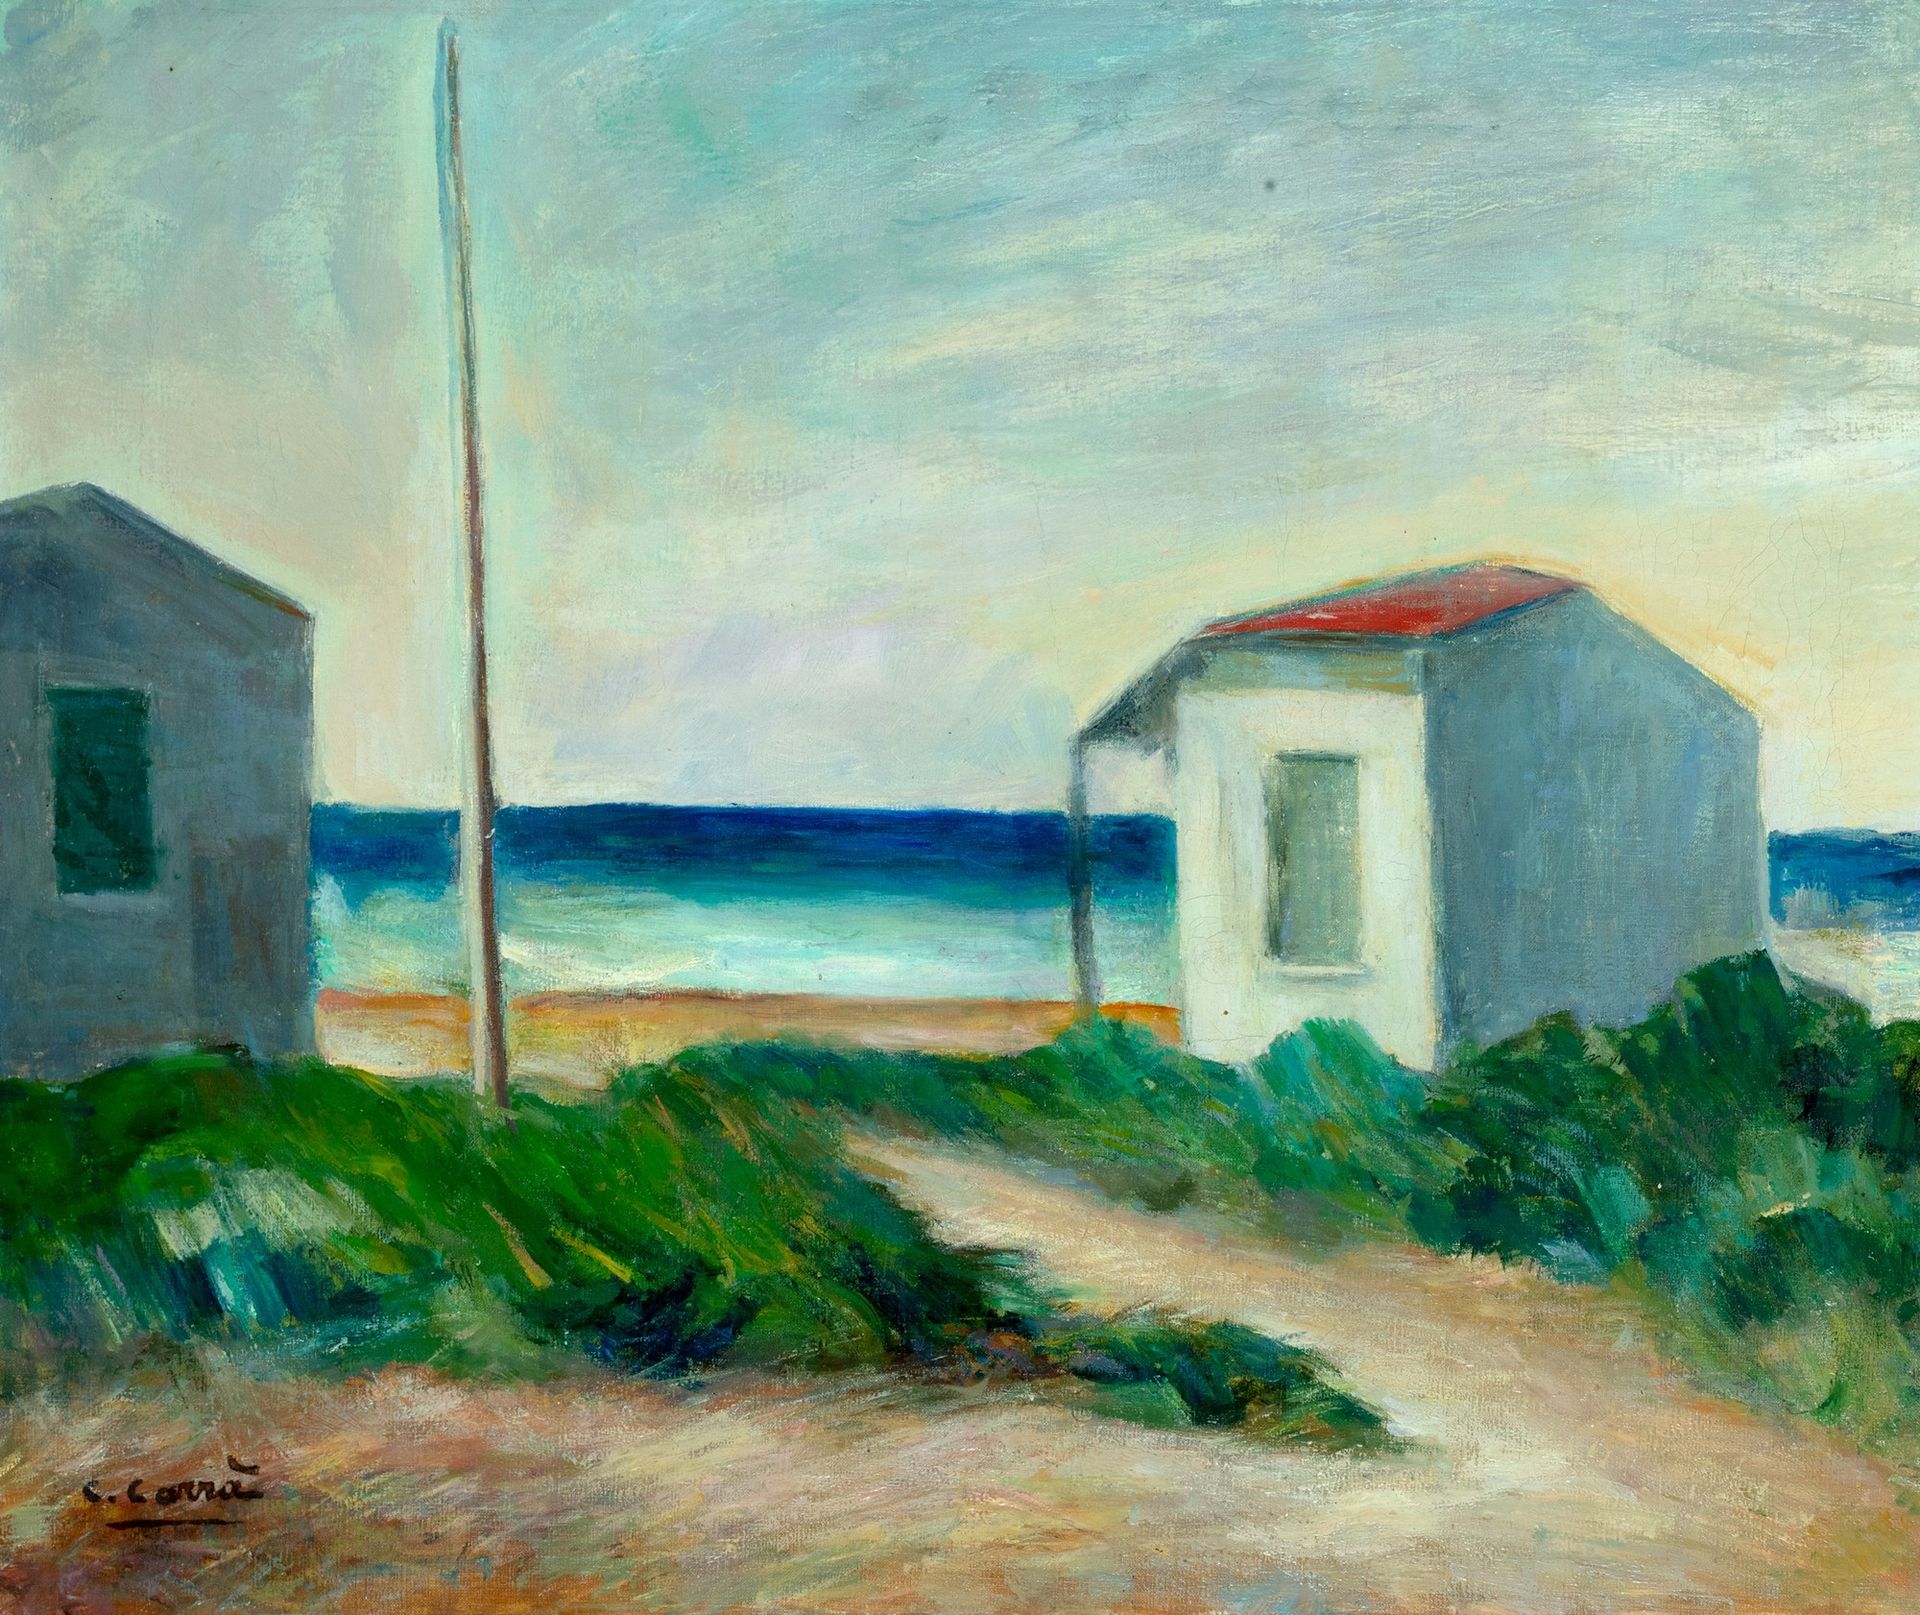 CARLO CARRÀ 海边的小屋，1947年

油画
50 x 60 cm
左下方签名：C. Carrà

 

在卡洛-卡拉档案馆登记的艺术品，编号为45/&hellip;